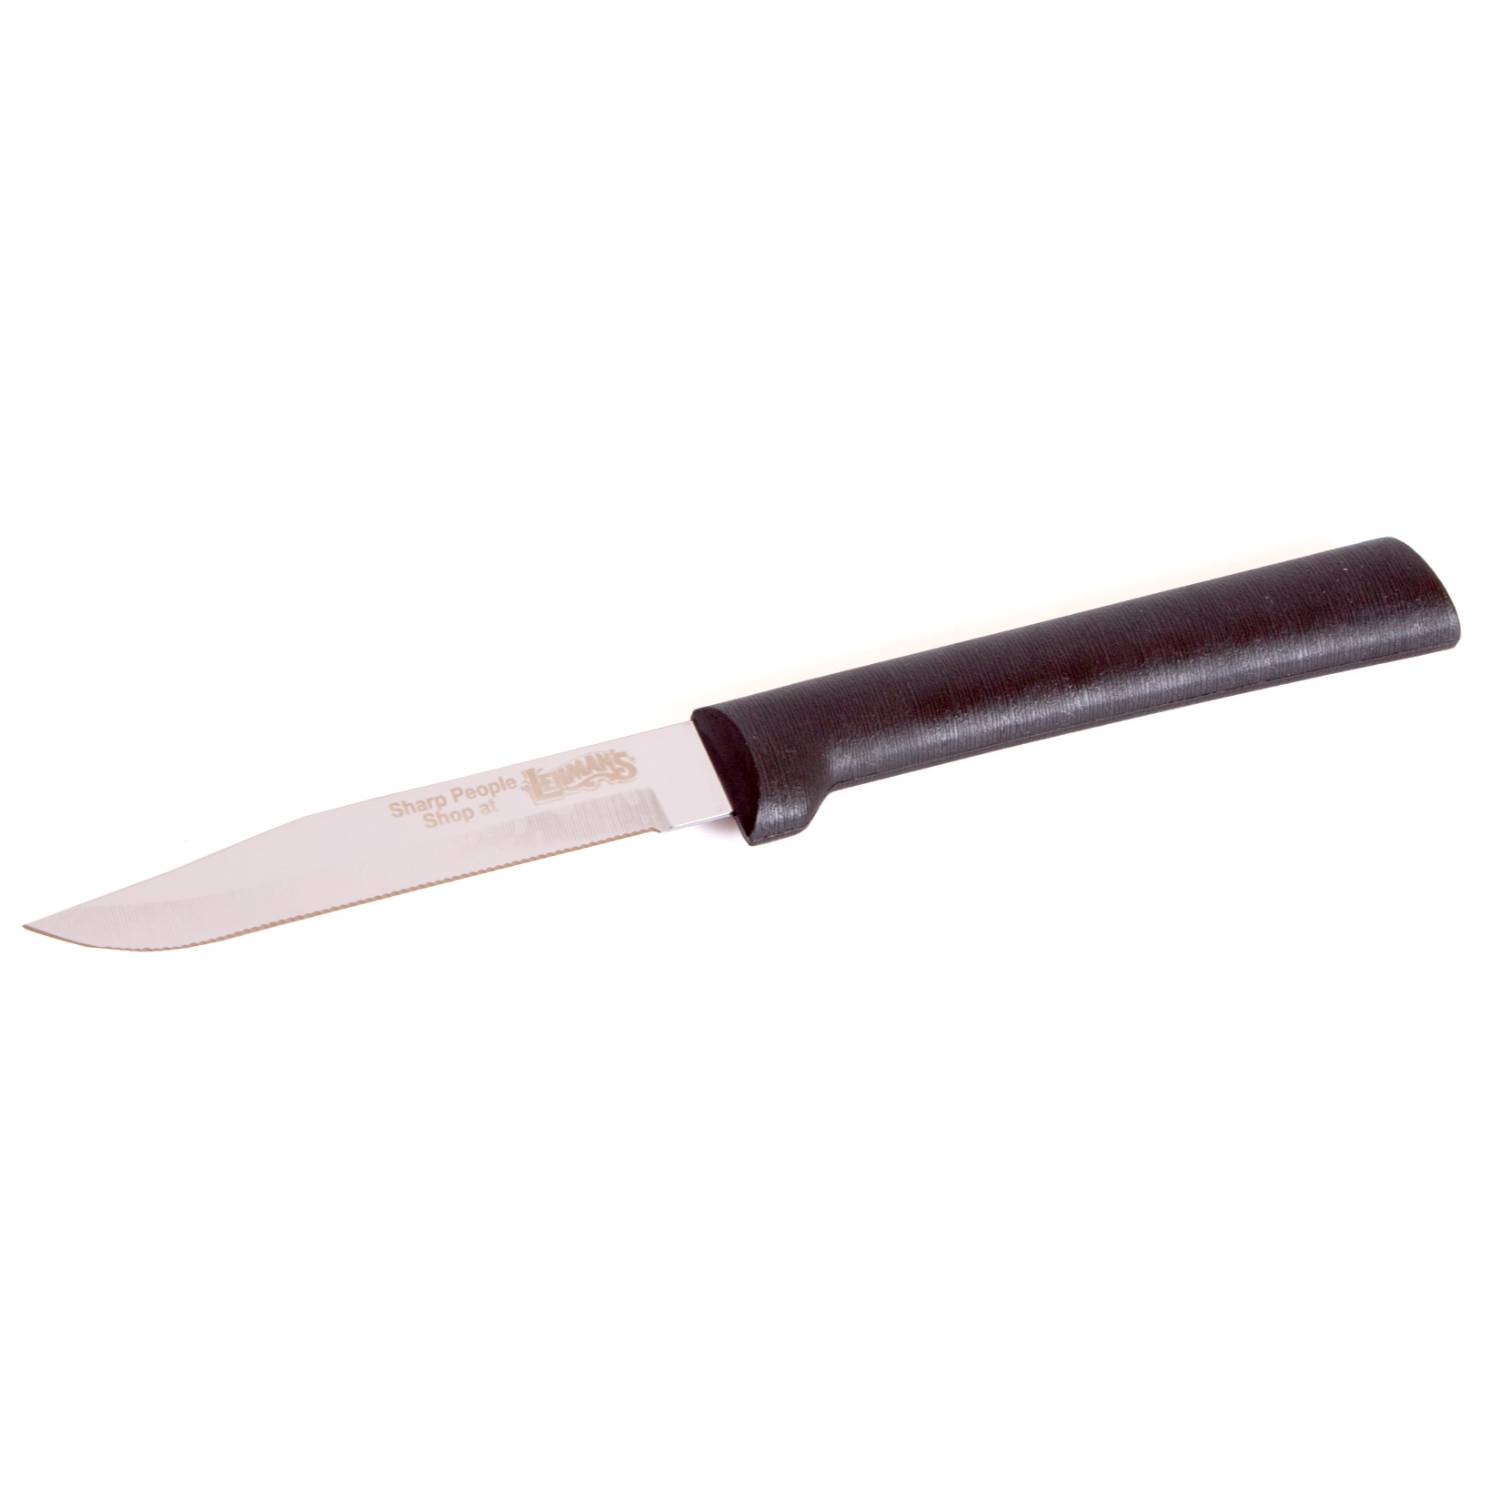 Rada Cutlery Serrated Paring Knife